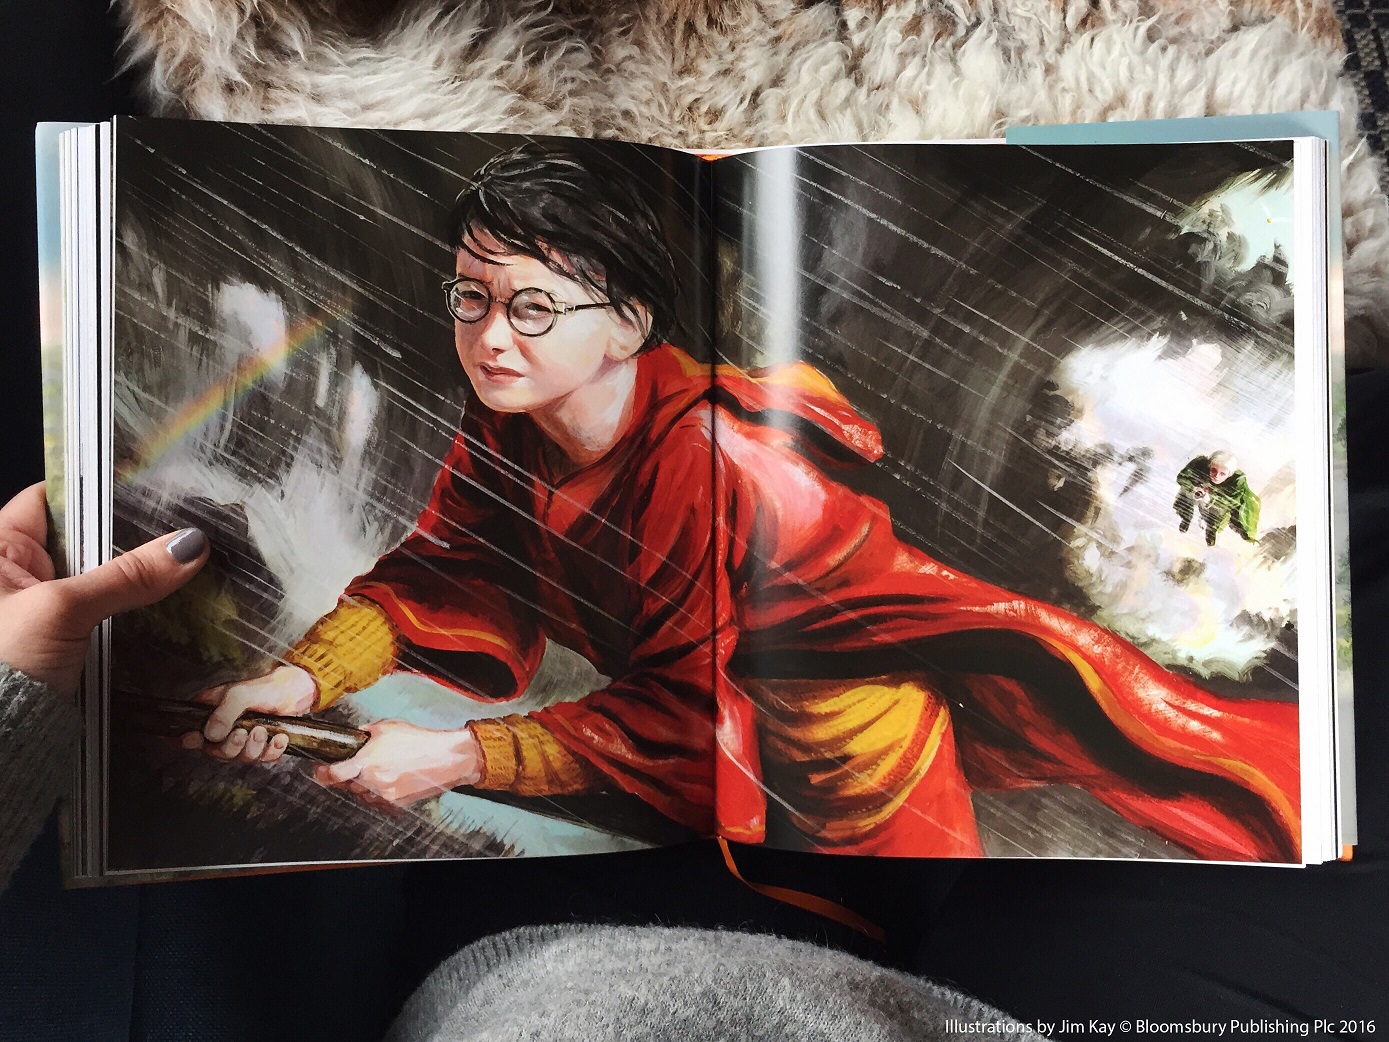 JK Rowling Harry Potter og mysteriekammeret illustrert av Jim Kay